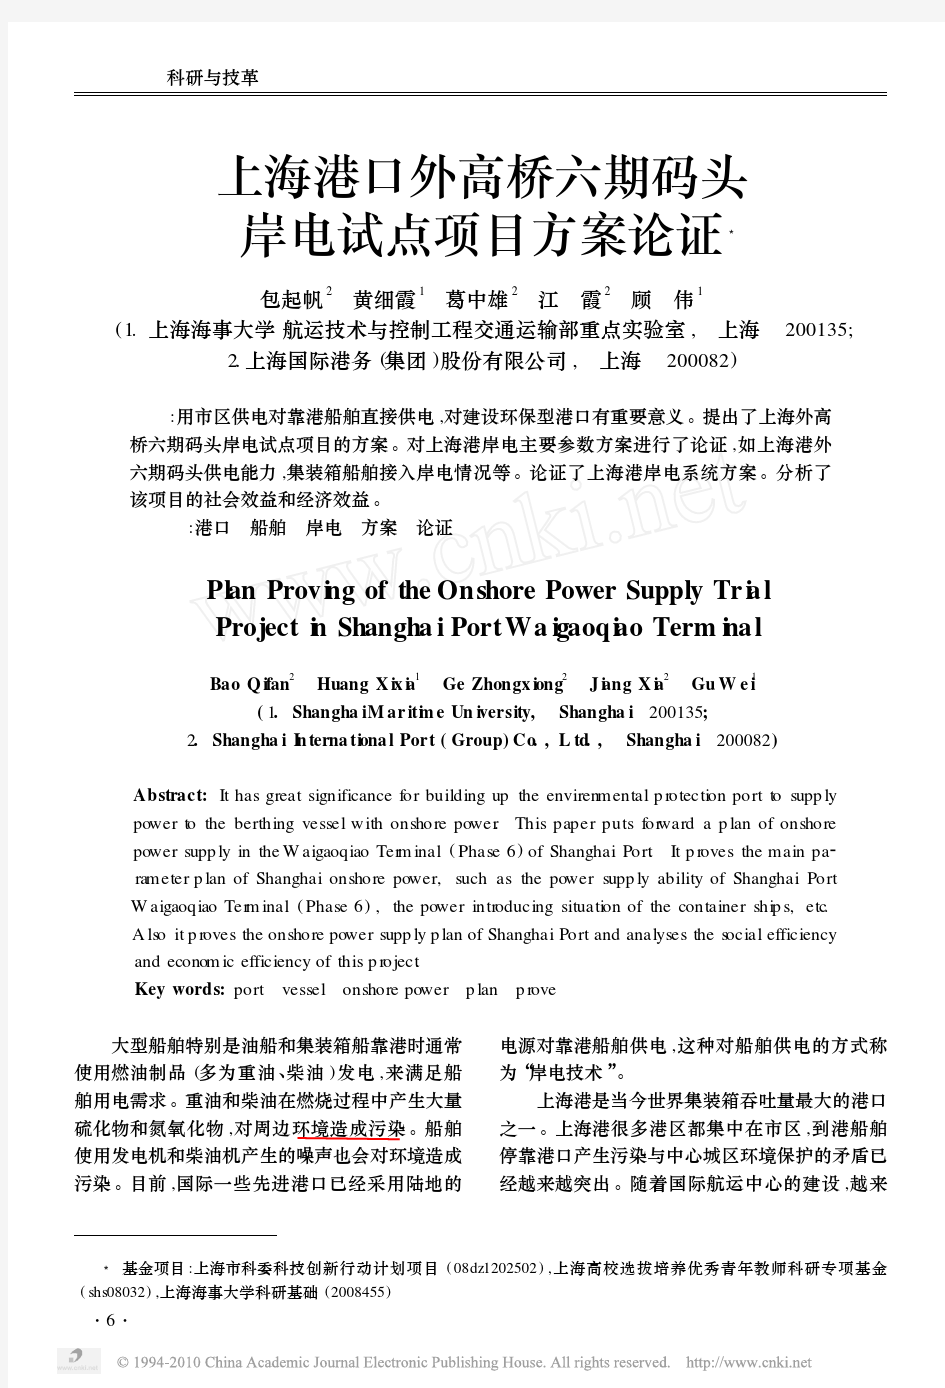 上海港口外高桥六期码头岸电试点项目方案论证